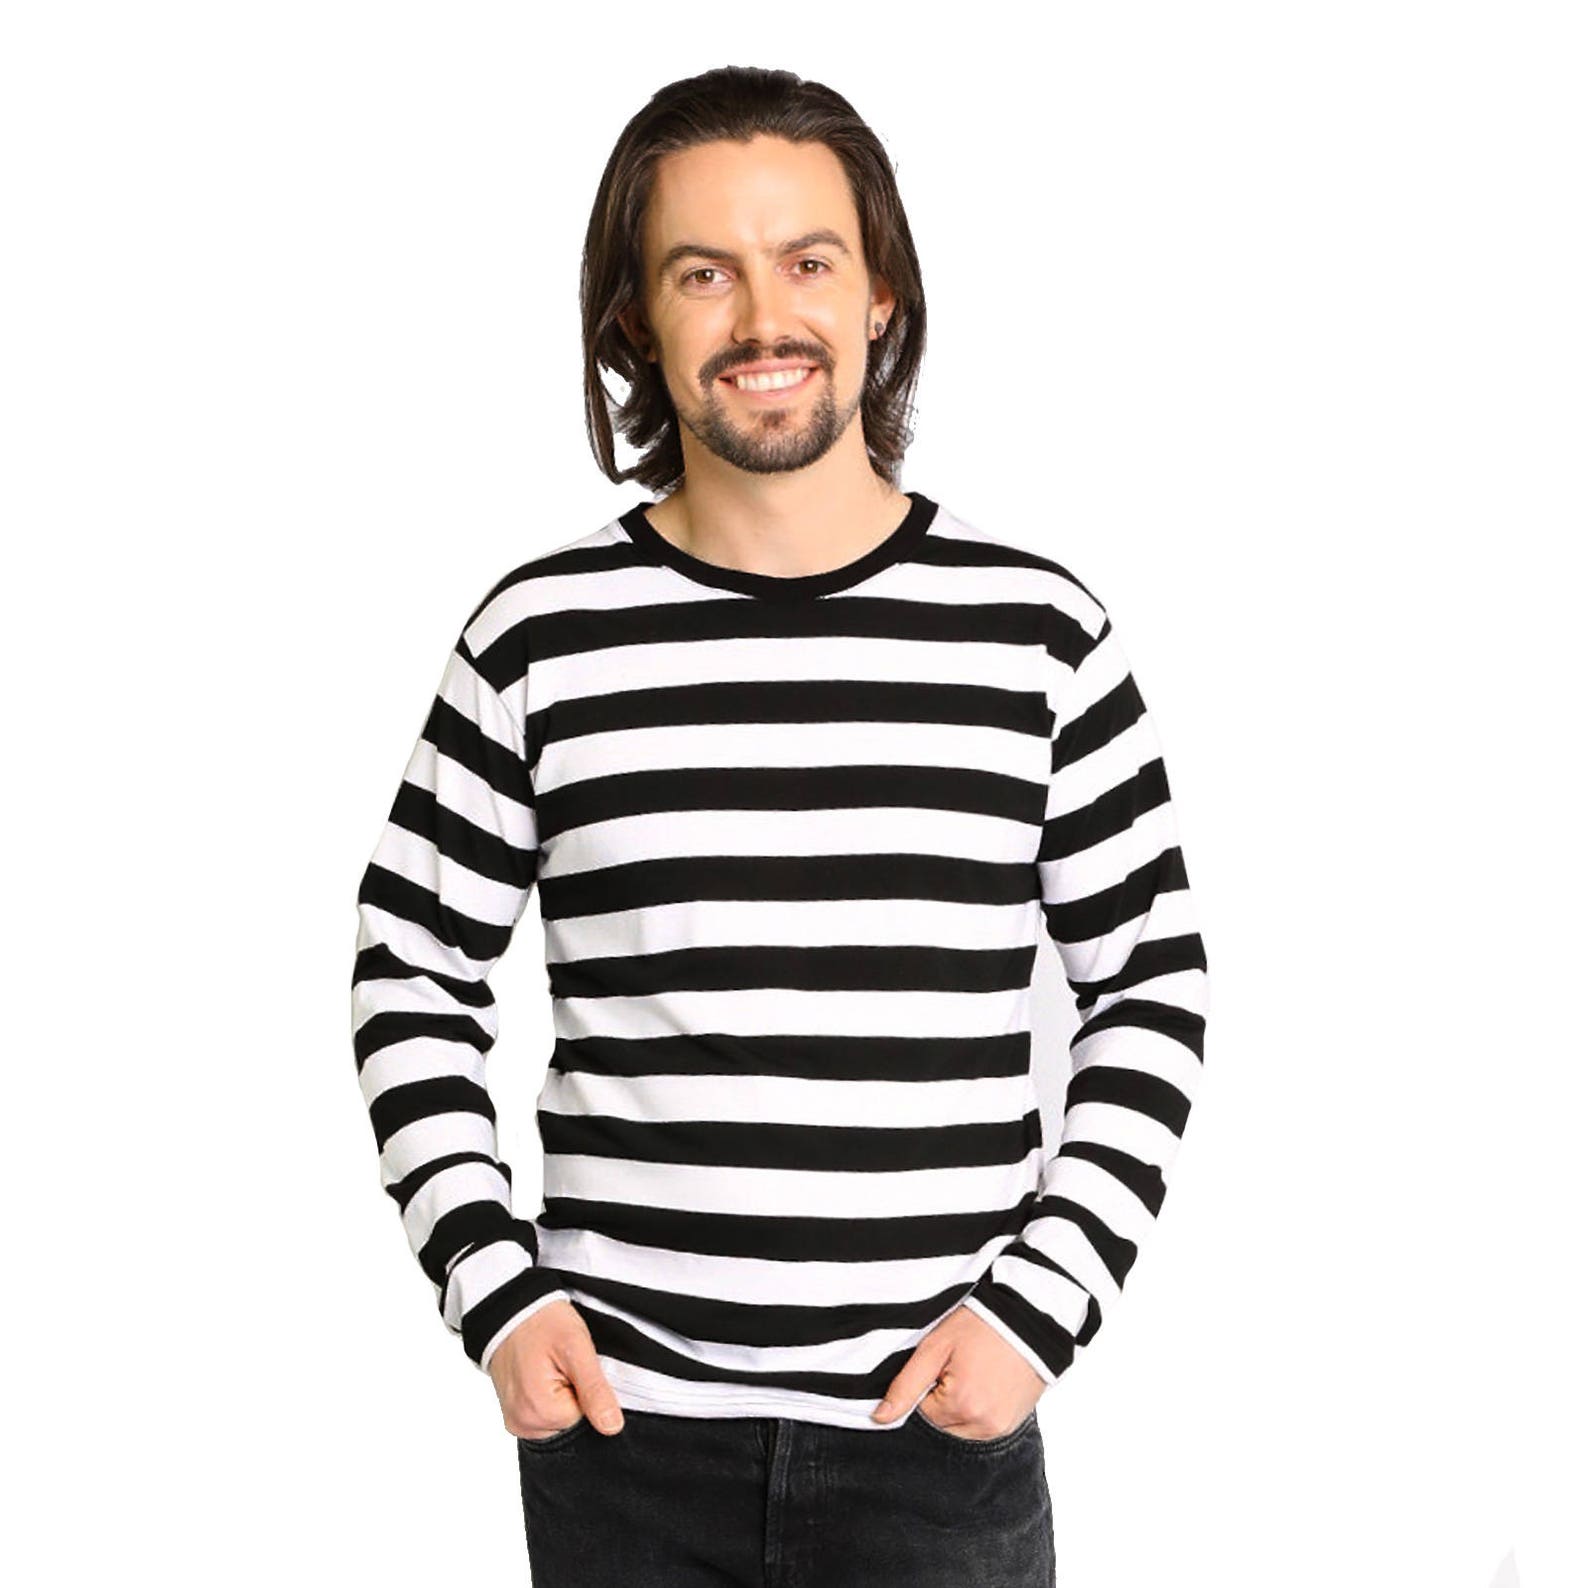 Men's Long Sleeve Black & White Striped Shirt | Etsy